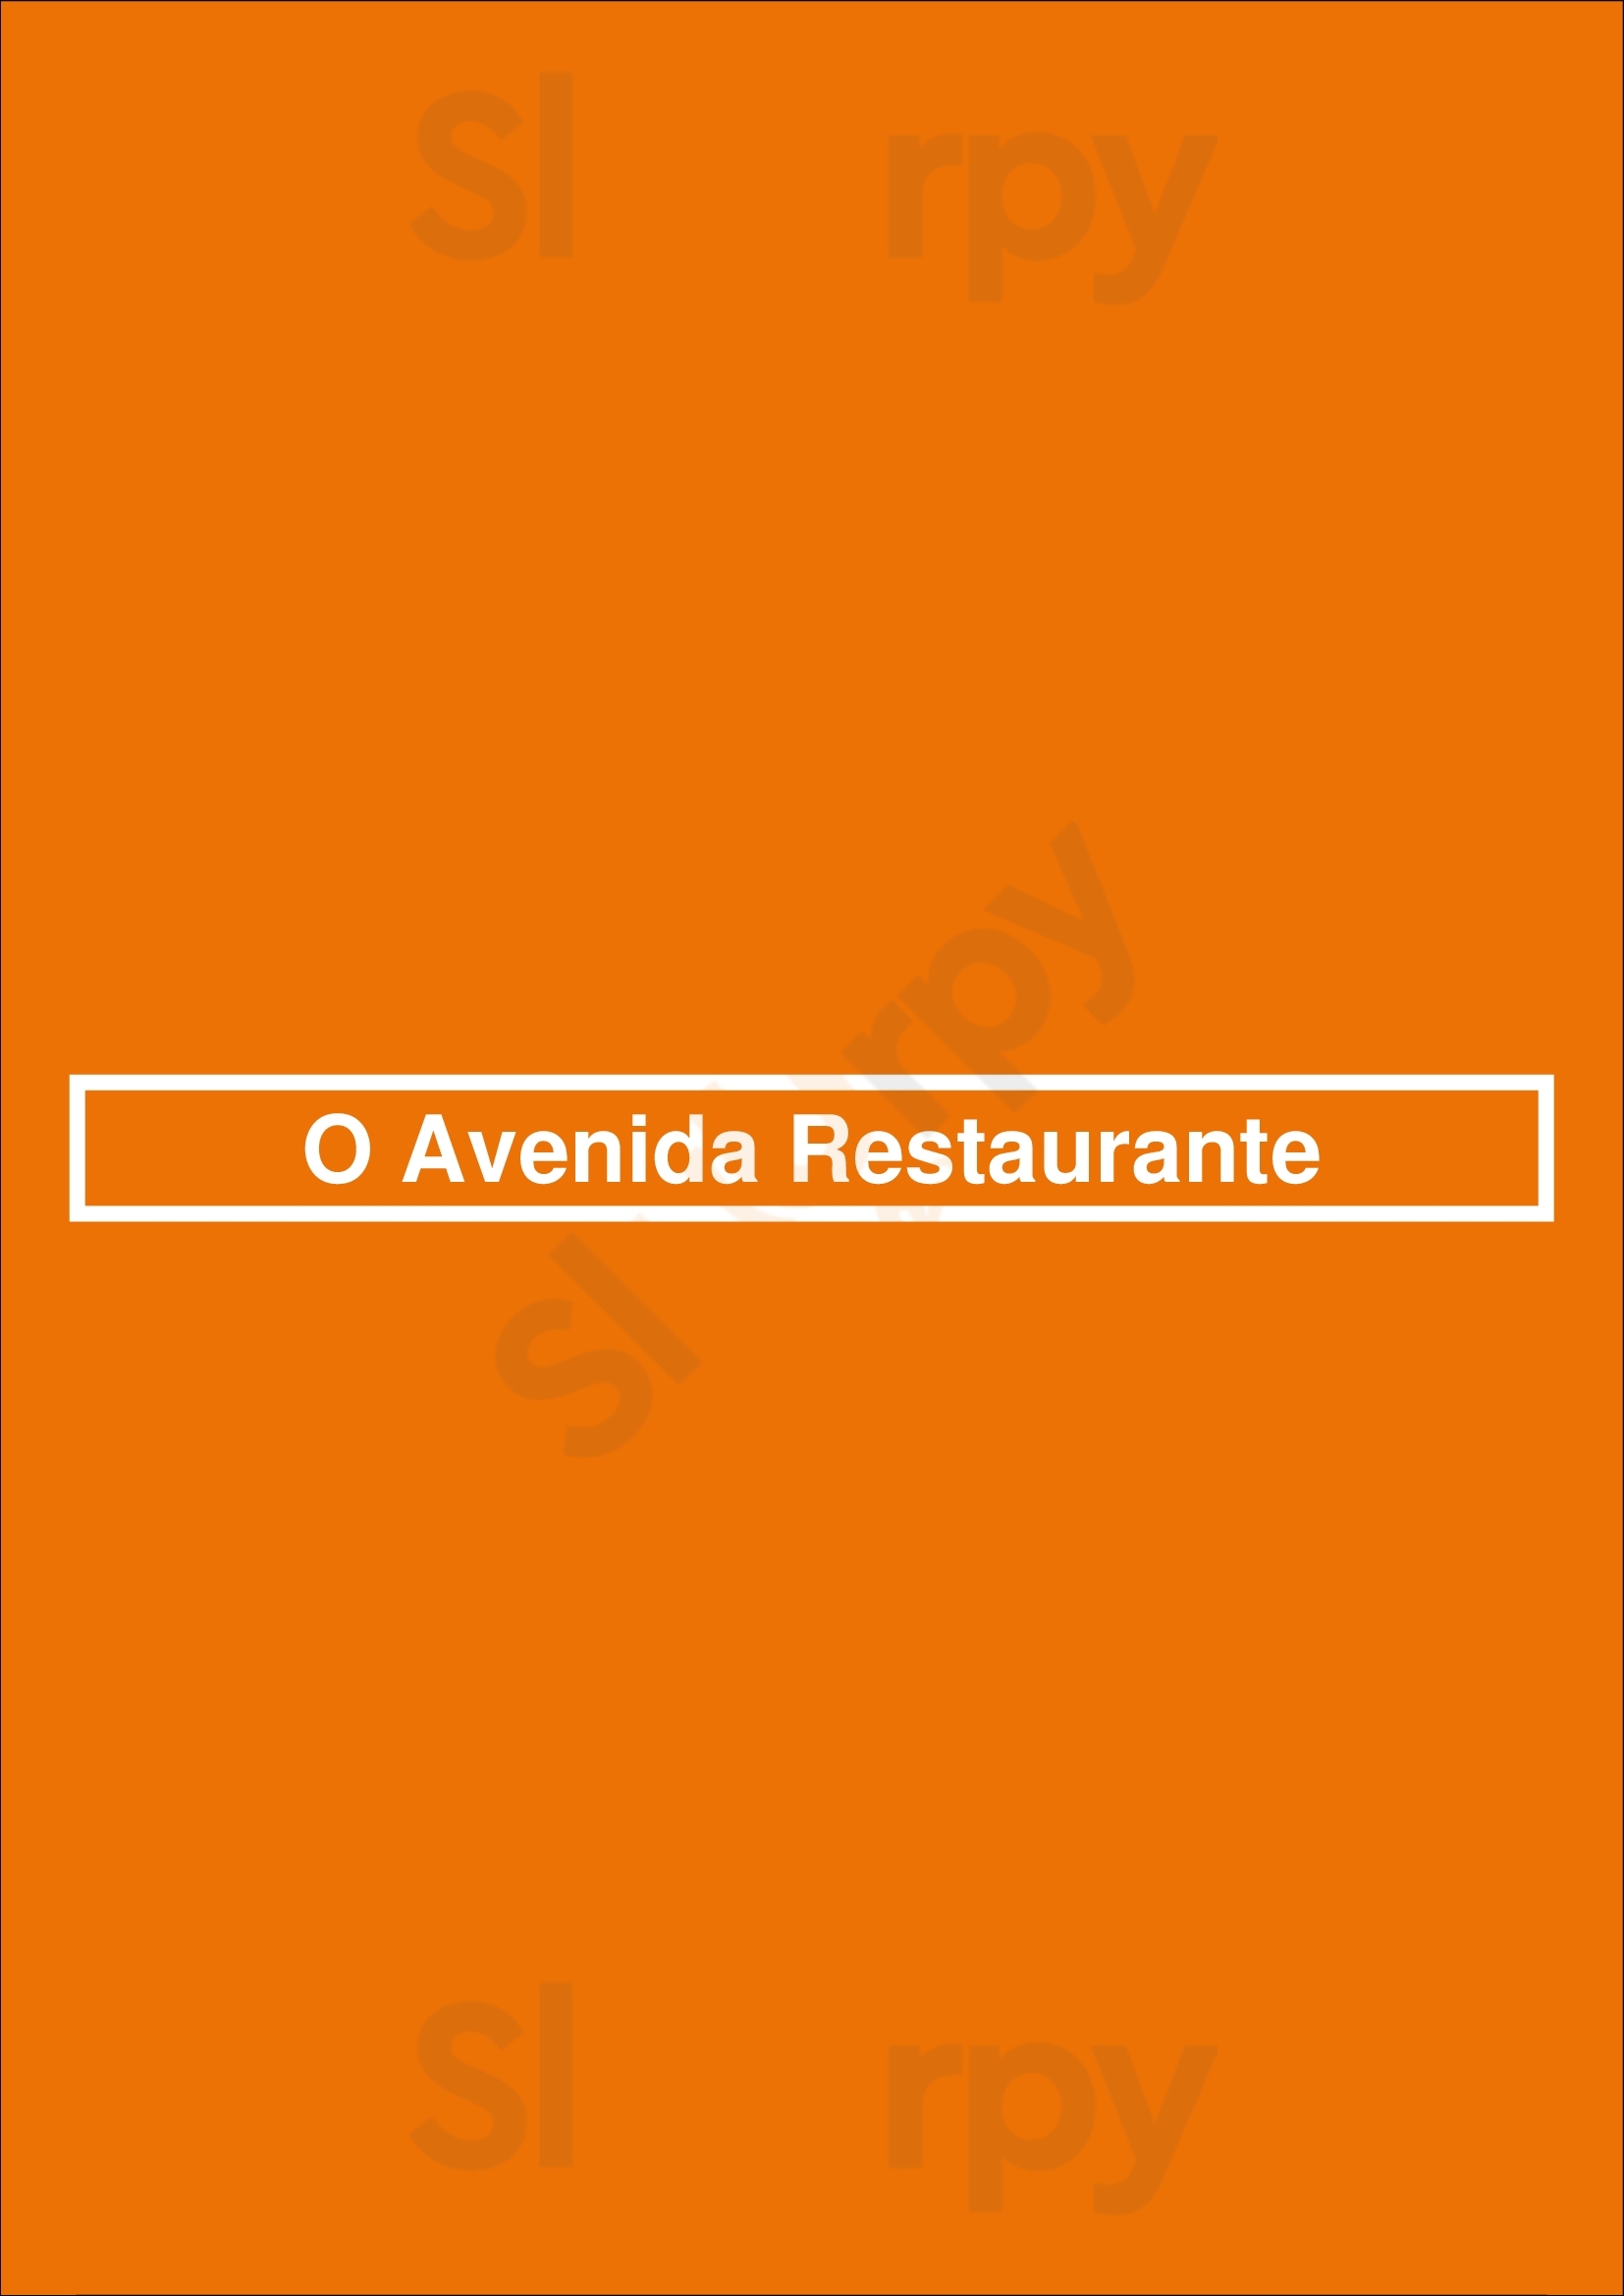 O Avenida Restaurante Loulé Menu - 1